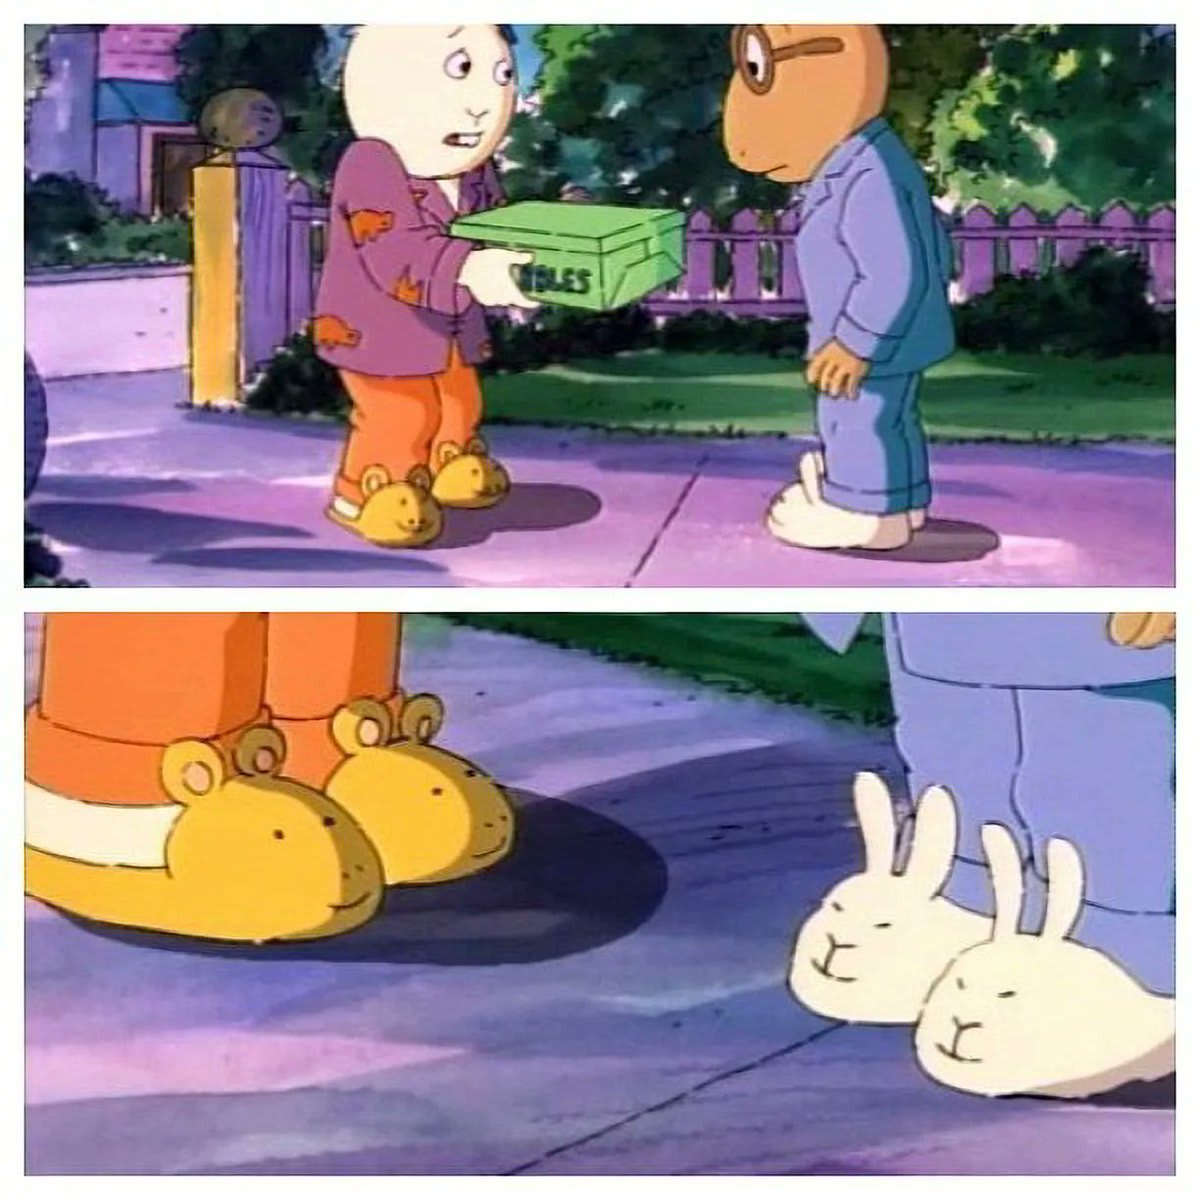 Arthur (the aardvark) has bunny slippers, while his best friend Buster (a bunny) has aardvark slippers